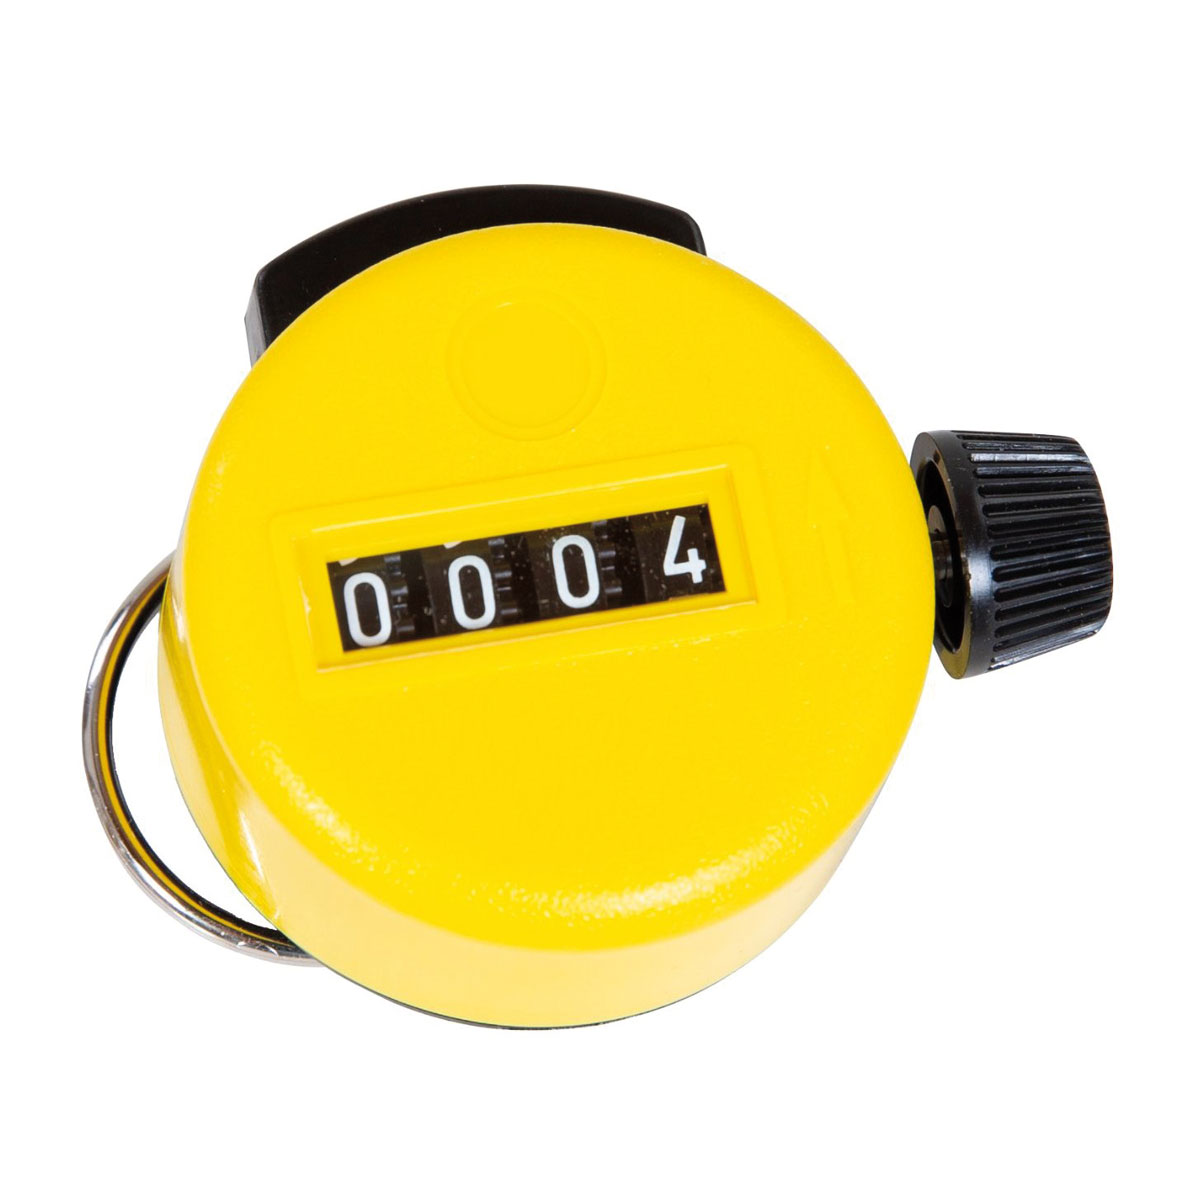 Handstückzähler, 4-stellig "Primat",gelb Kunststoffgehäuse Durchmesser 47 mm mit Ring